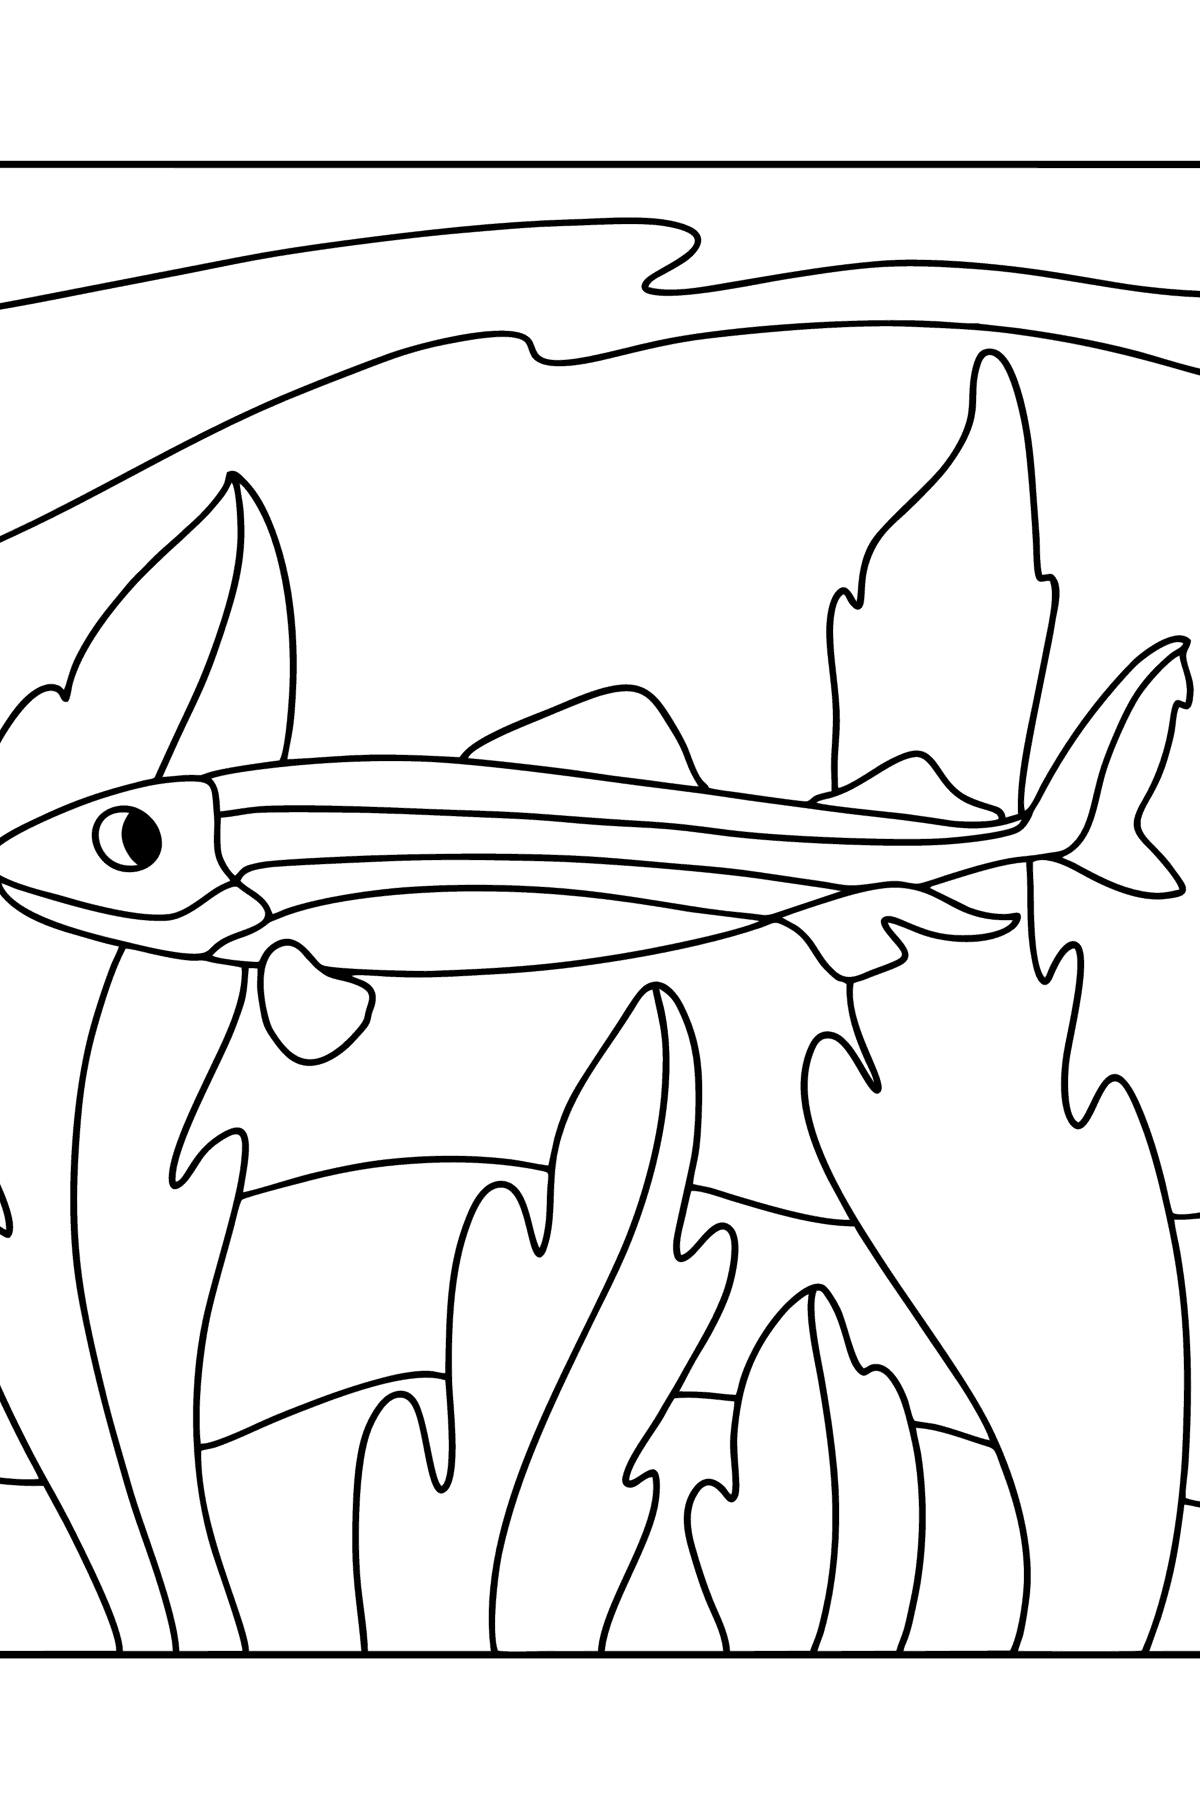 Desenho de Tubarão Crocodilo para colorir - Imagens para Colorir para Crianças